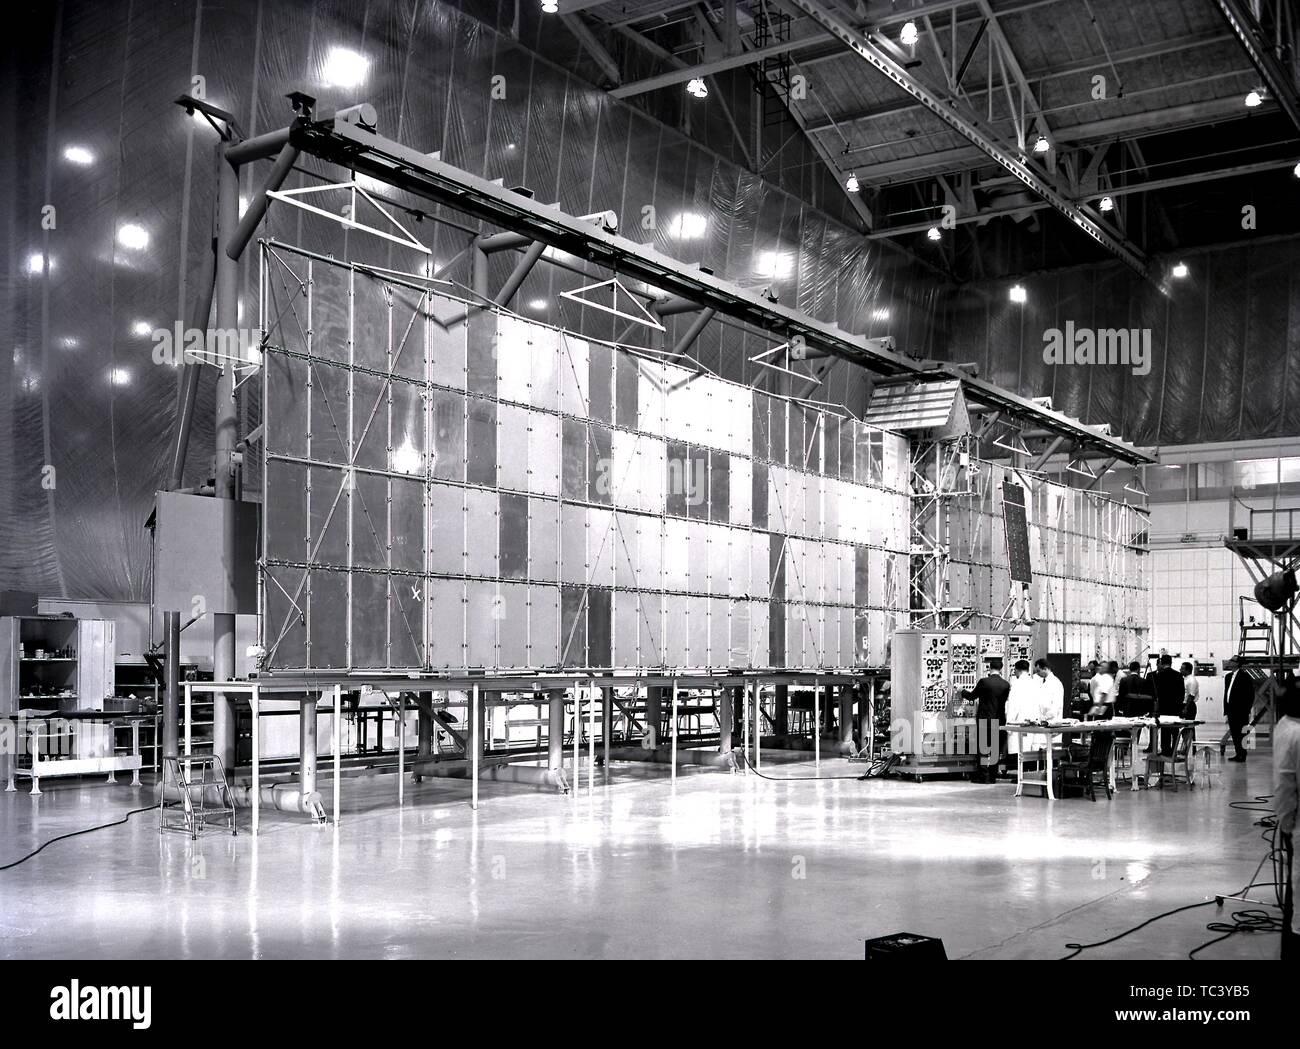 I tecnici della NASA ispezionare il Saturn I satellite 96-piede apertura alare prima del lancio, Marshall Space Flight Center di Huntsville, Alabama, febbraio 1965. Immagine cortesia Nazionale Aeronautica e Spaziale Administration (NASA). () Foto Stock